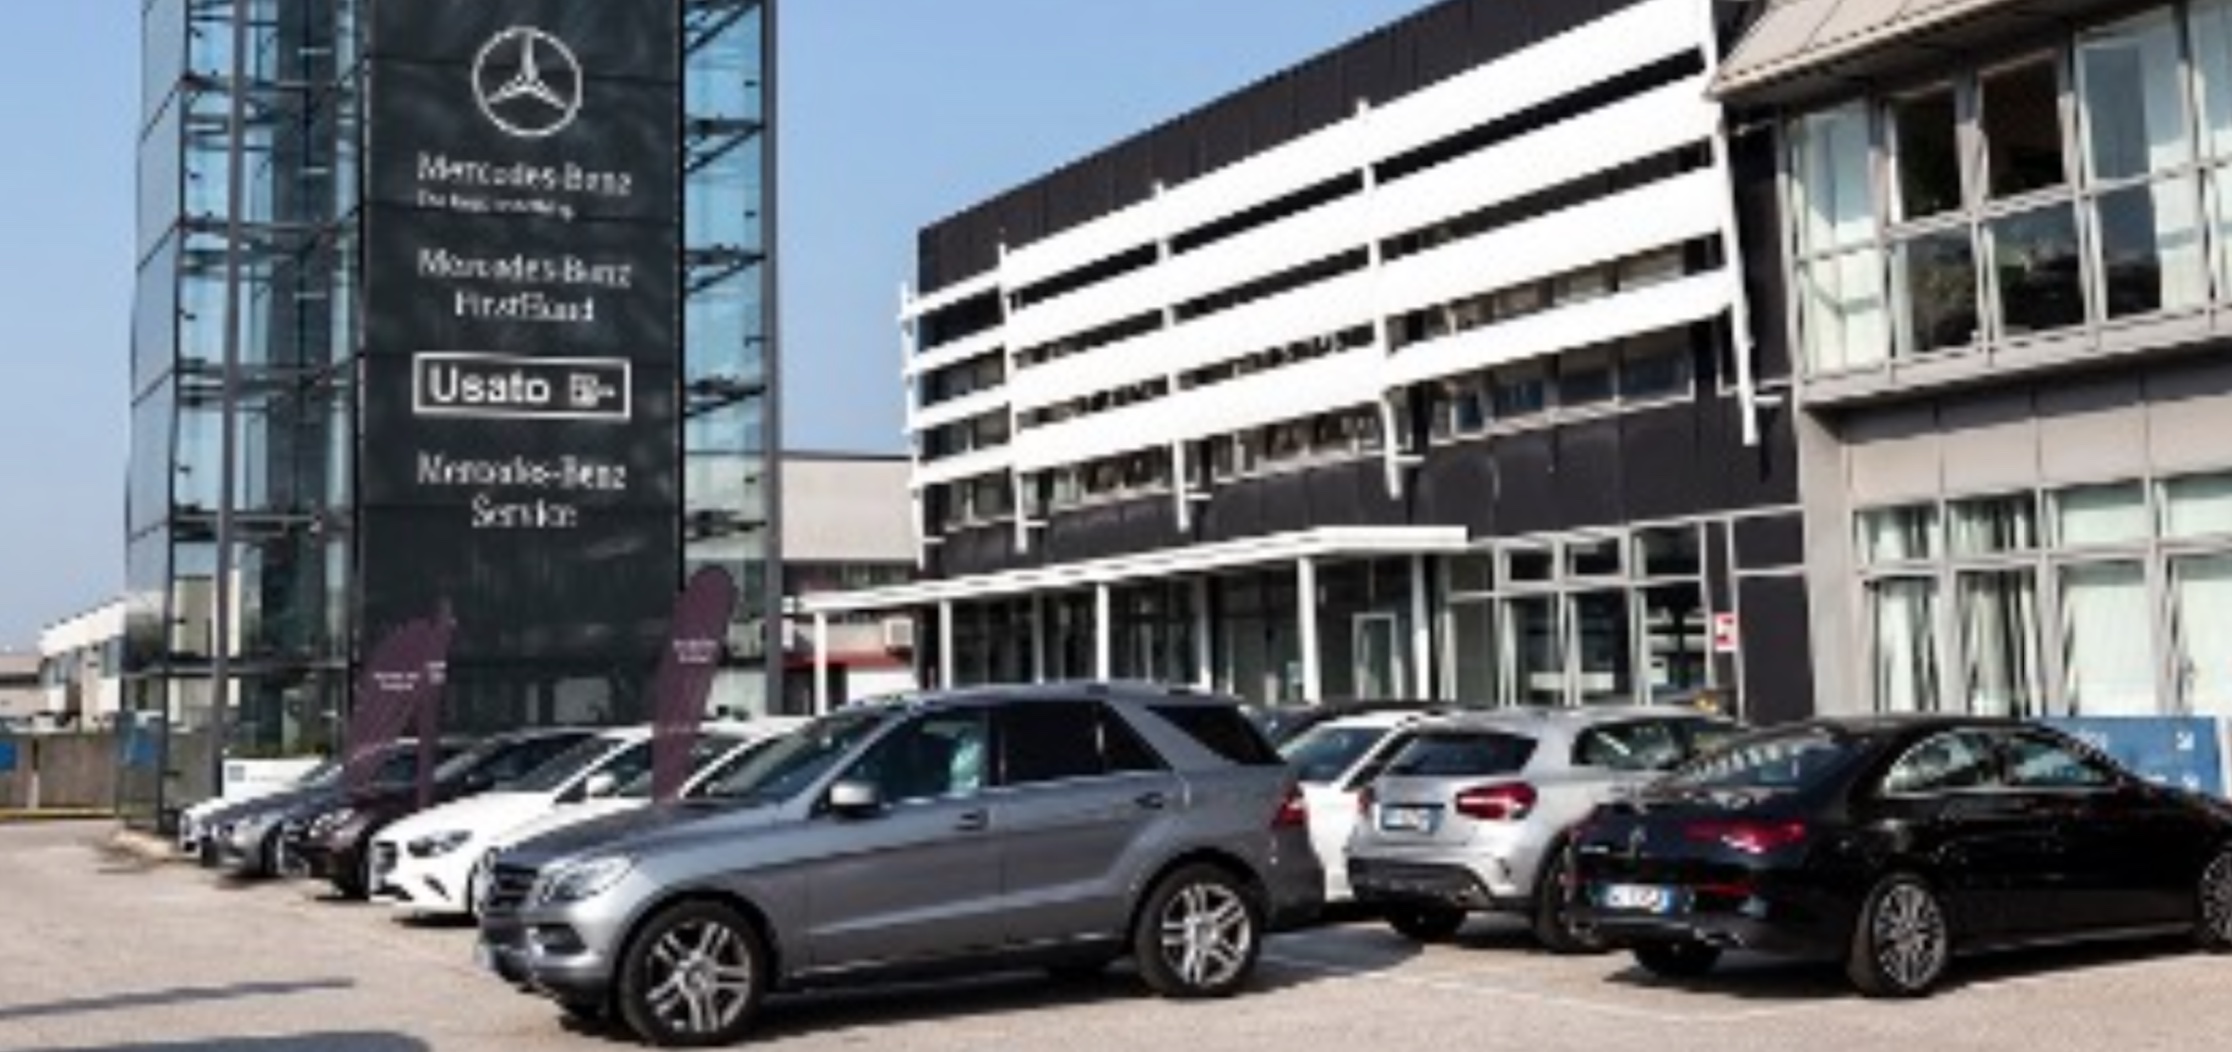 Truffa alla Mercedes con documenti falsi: 4 arresti a Casoria